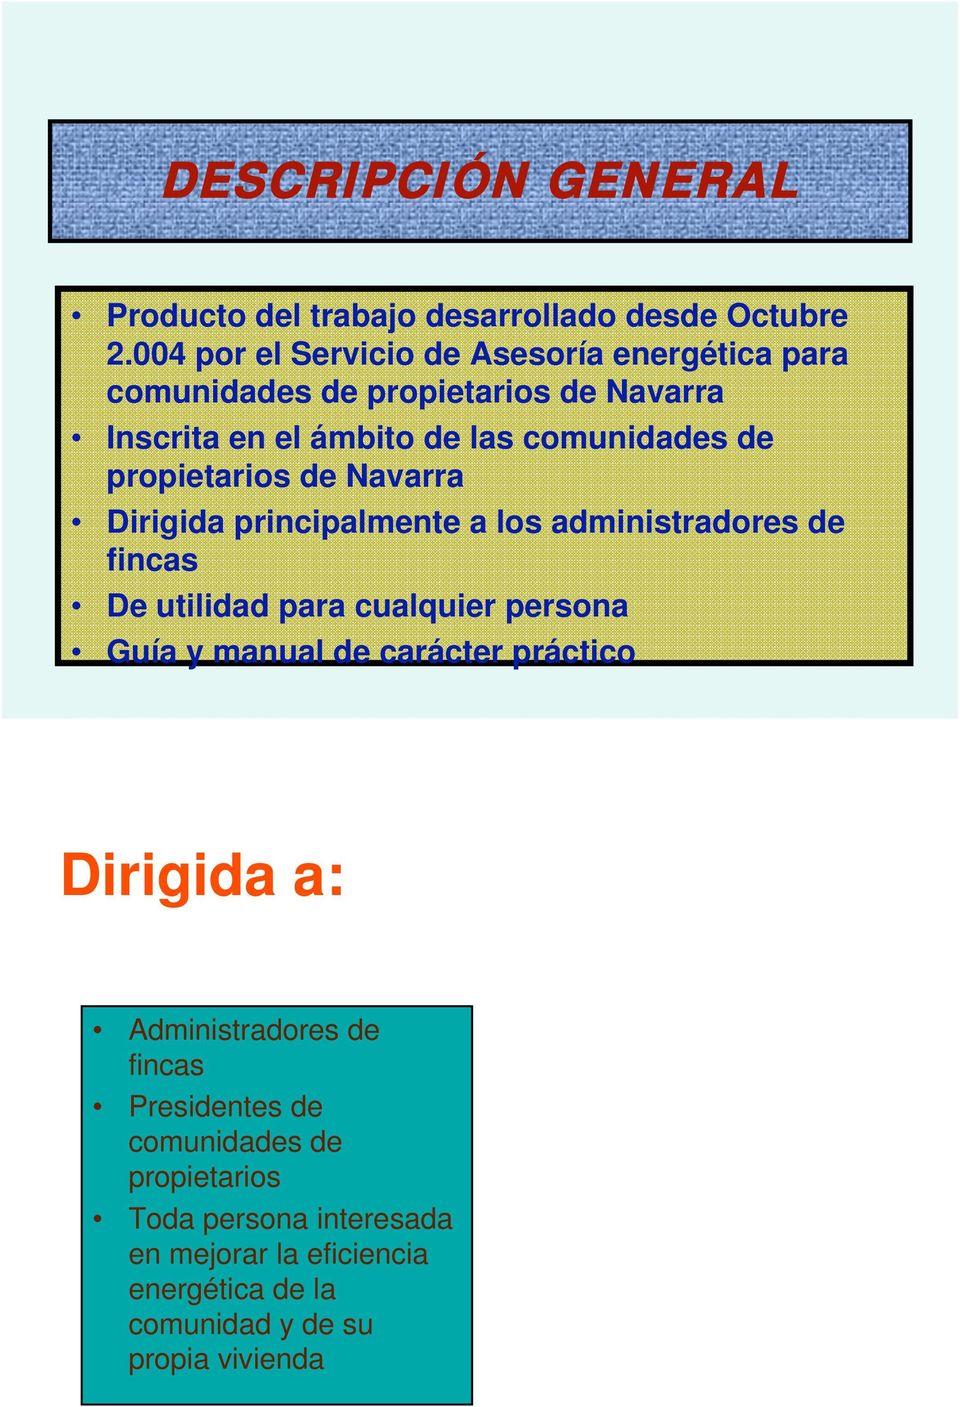 propietarios de Navarra Dirigida principalmente a los administradores de fincas De utilidad para cualquier persona Guía y manual de